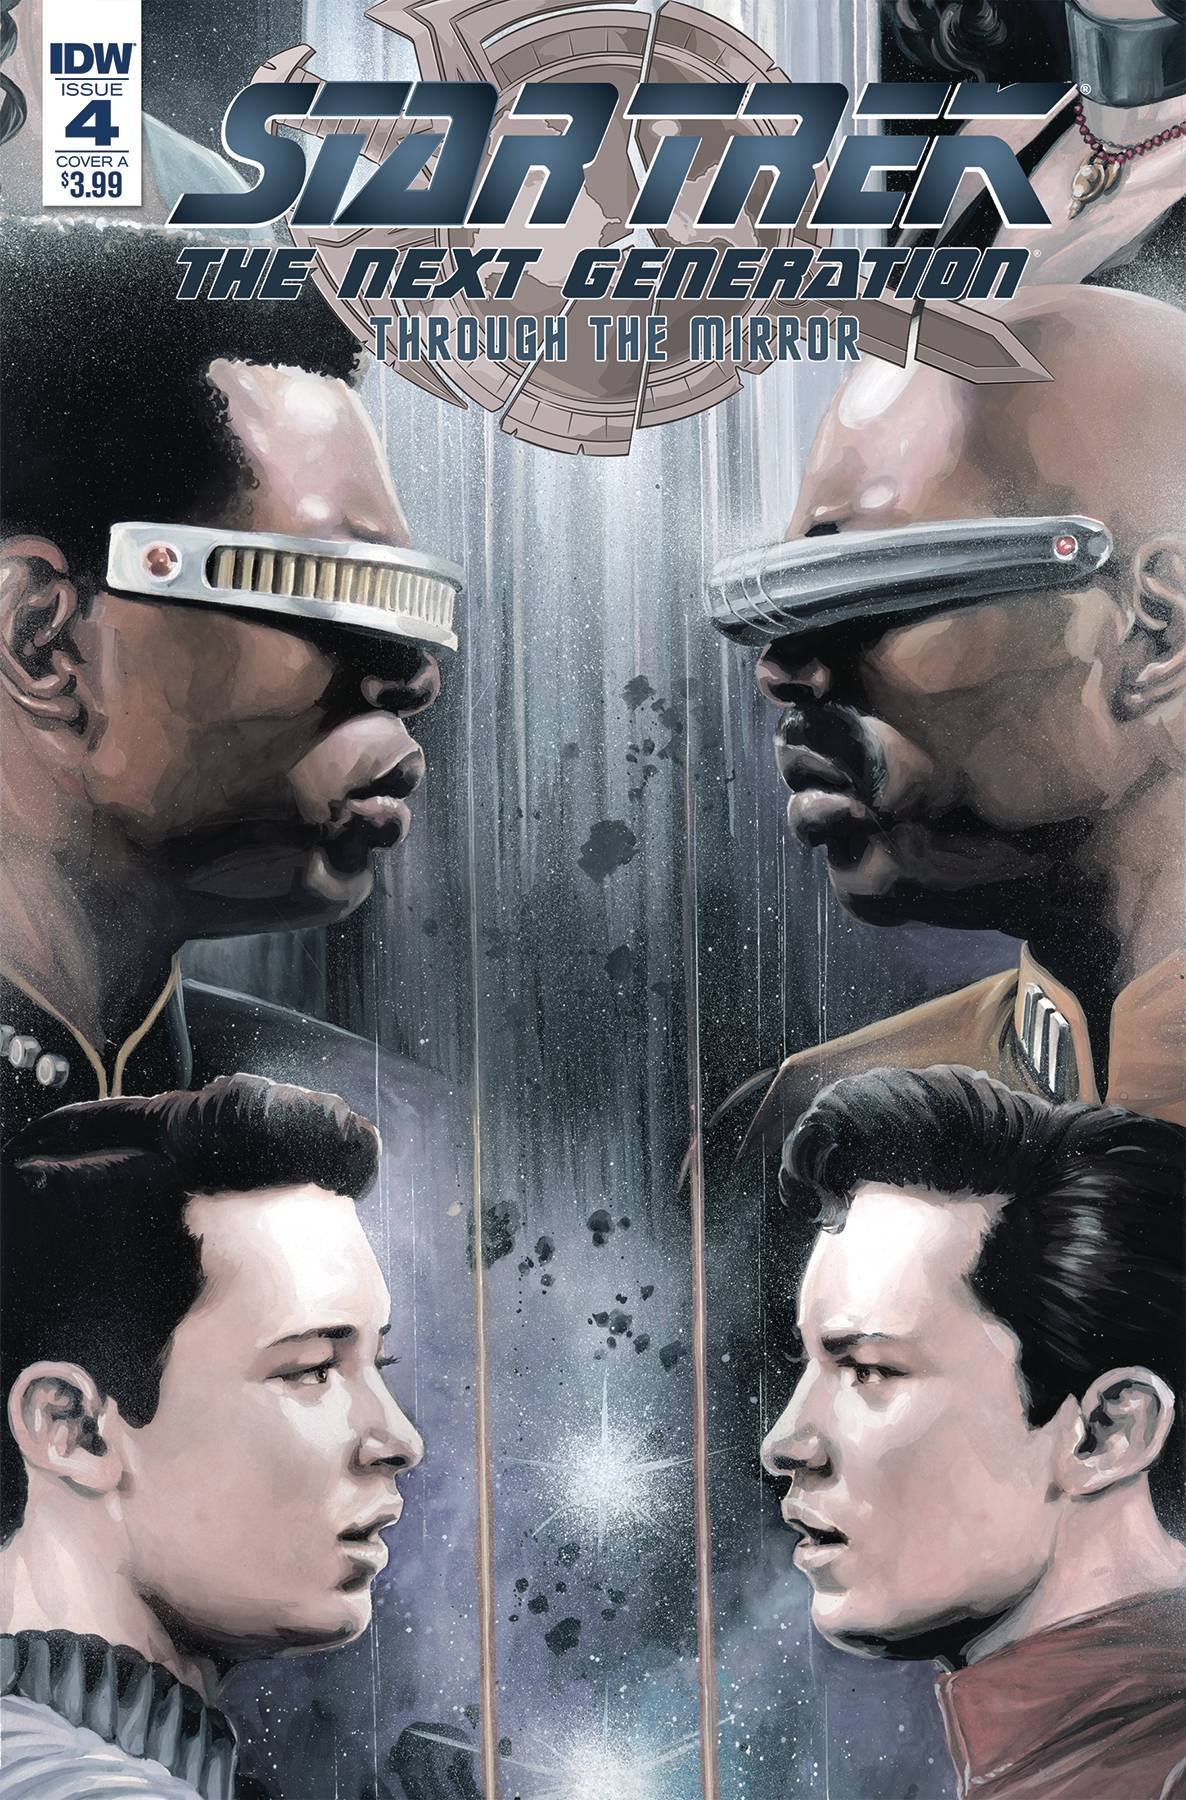 Star Trek Tng Through The Mirror #4 Cover A Woodward